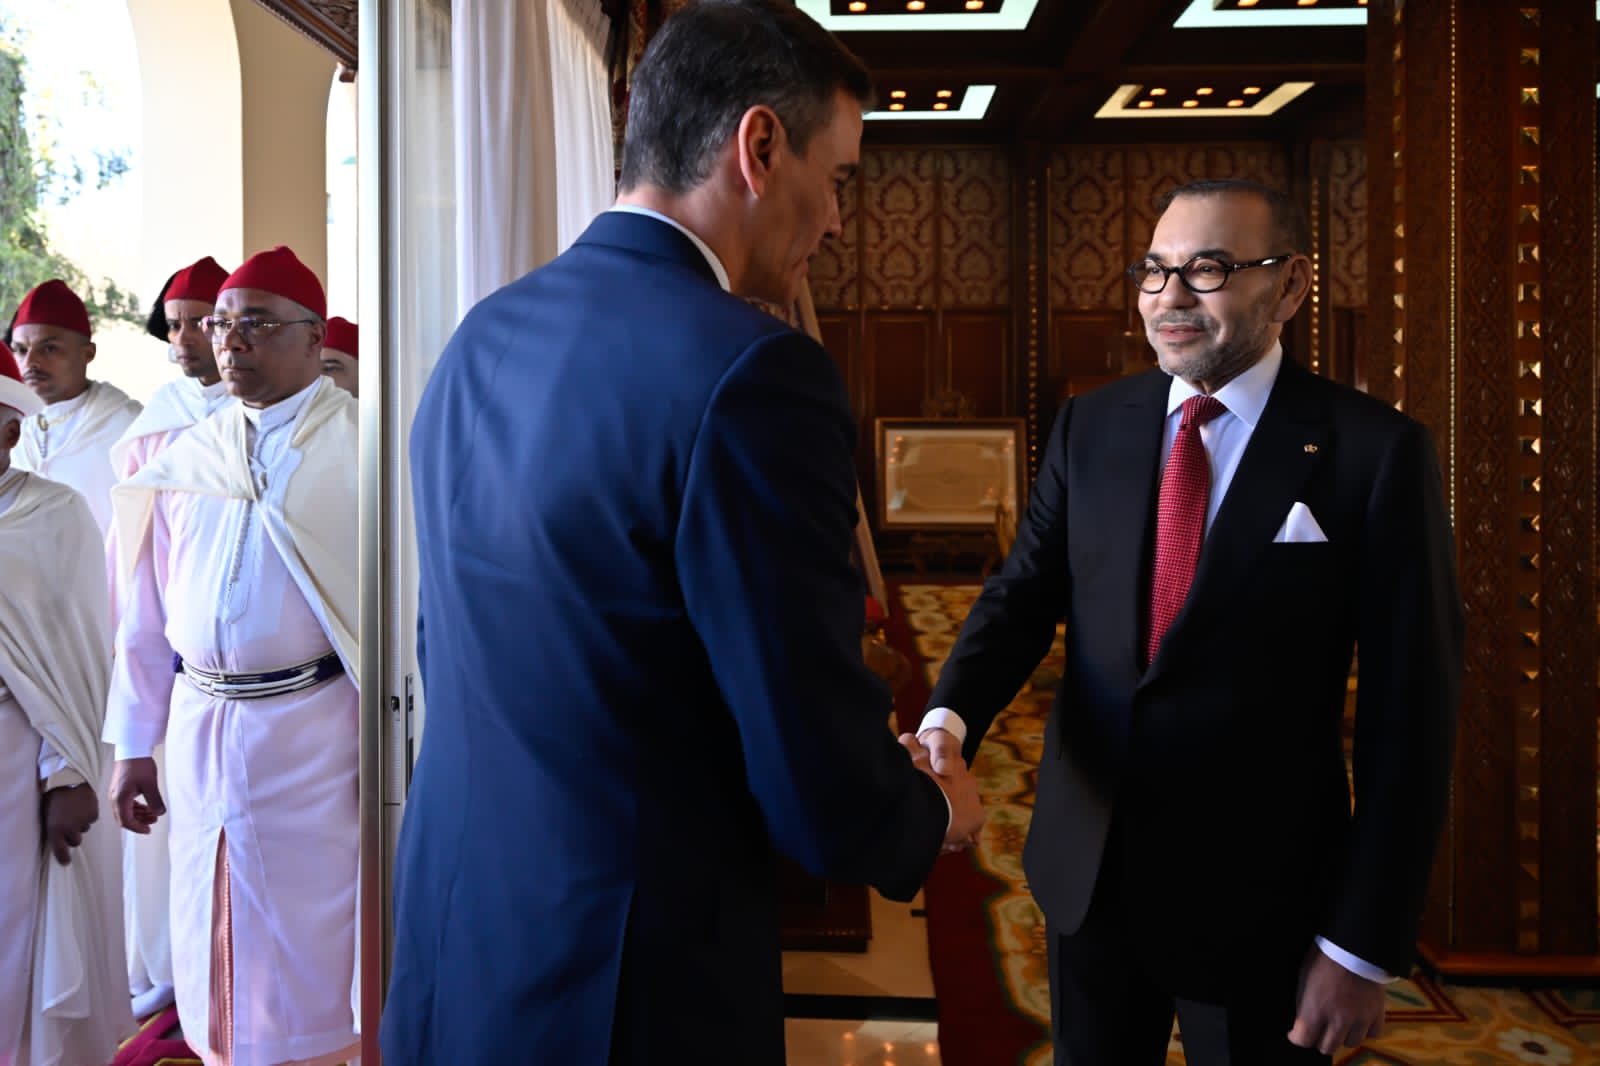 Pedro Sanchez d’Espagne chez le Roi du Maroc pour des nouveaux horizons de coopération entre les deux pays